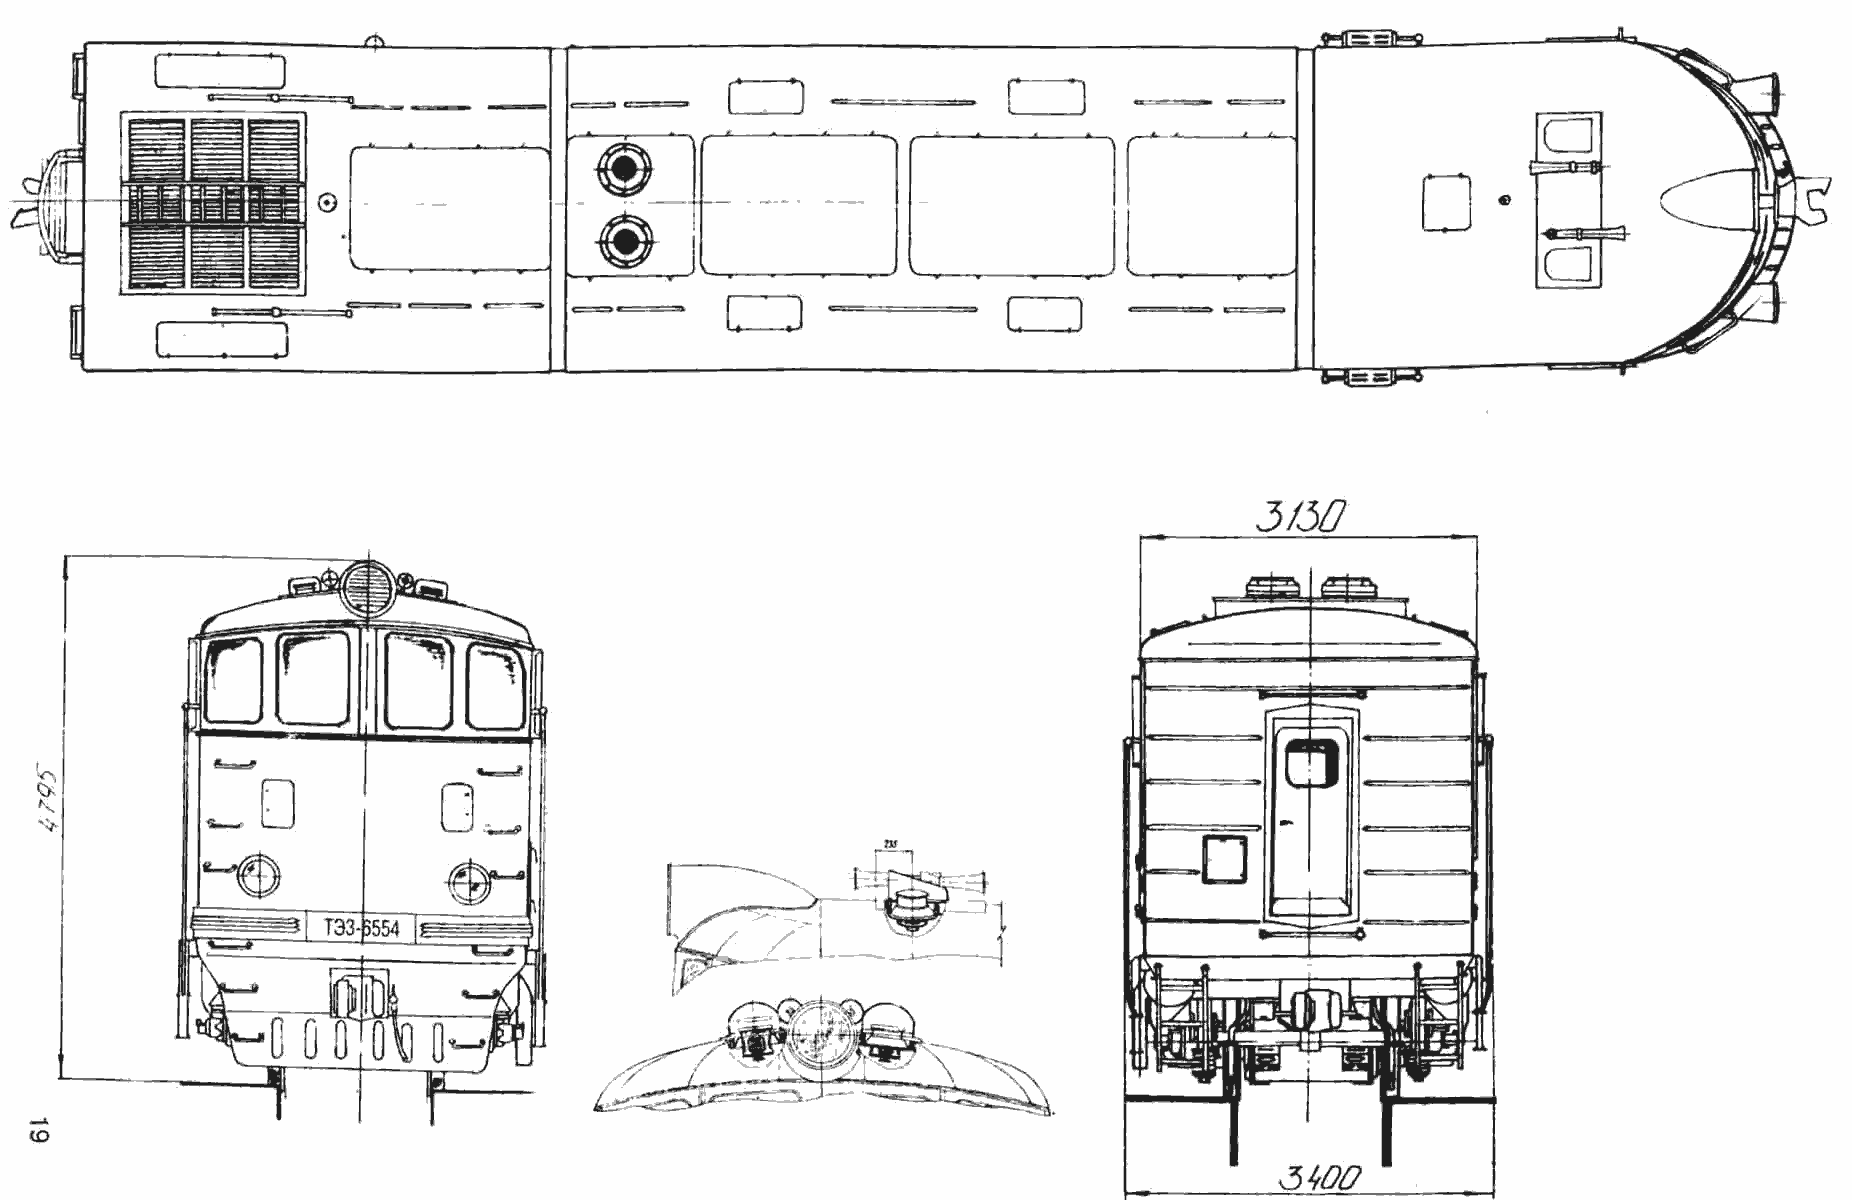 TE3 diesel locomotive blueprint